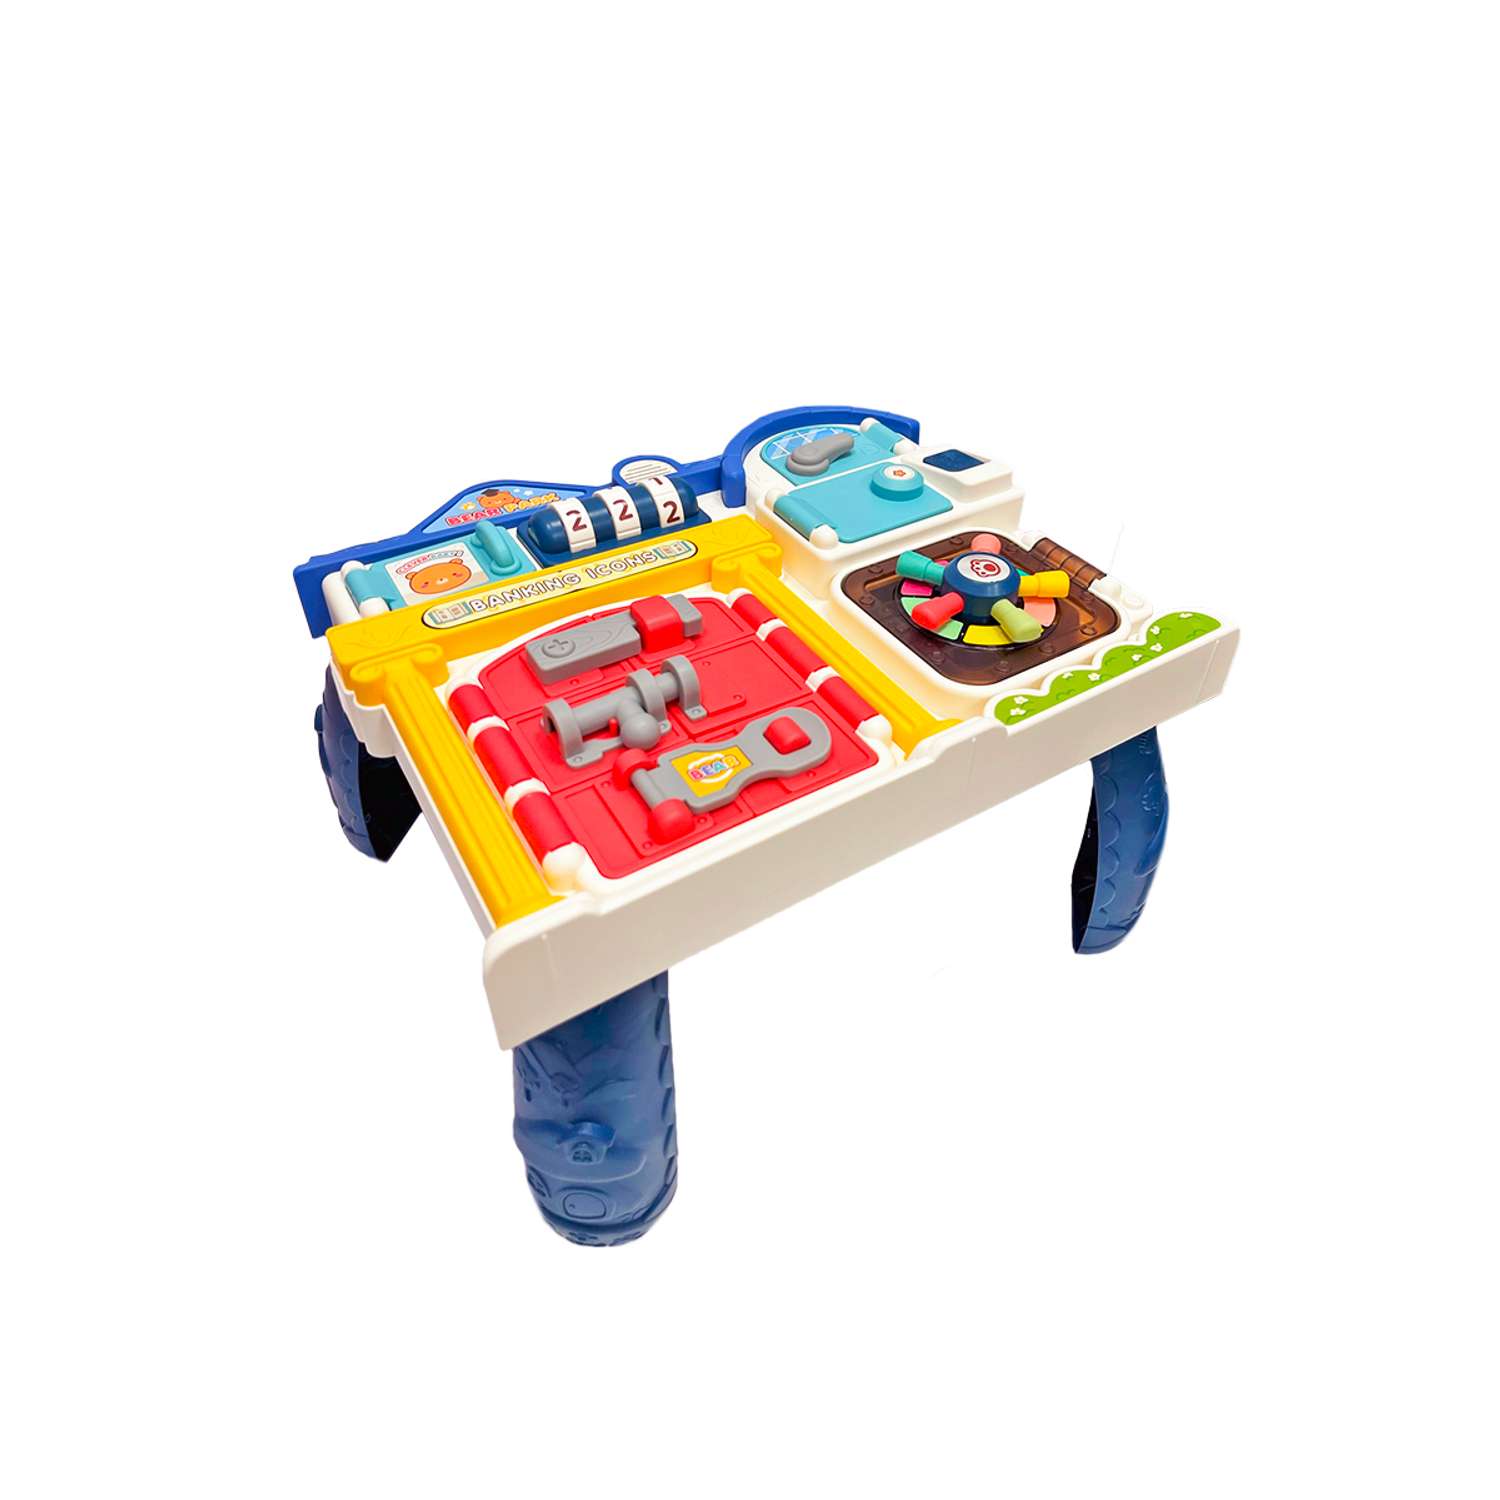 Детский игровой центр SHARKTOYS столик на ножках бизиборд с музыкой - фото 3